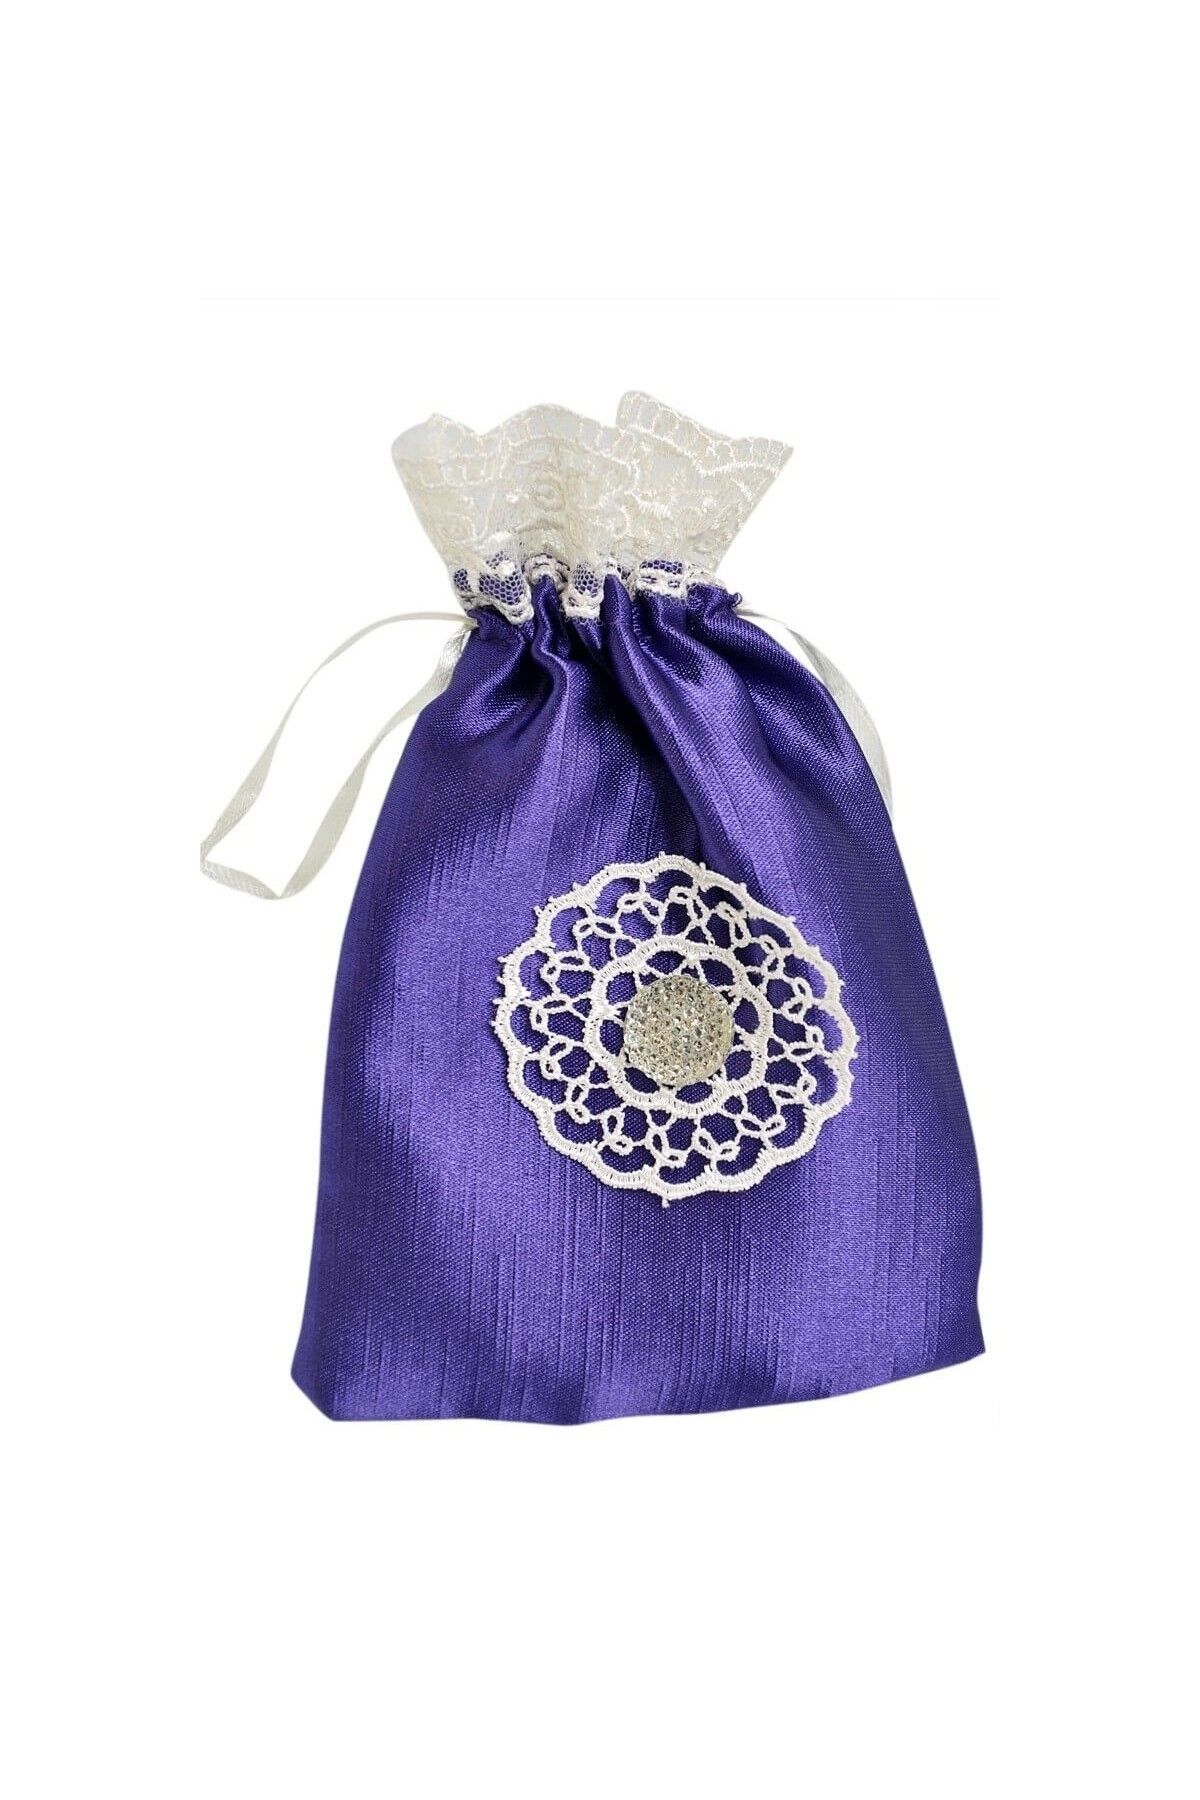 İhvan Gift Фиолетовый мешочек с кружевными краями для четок 1736961736960